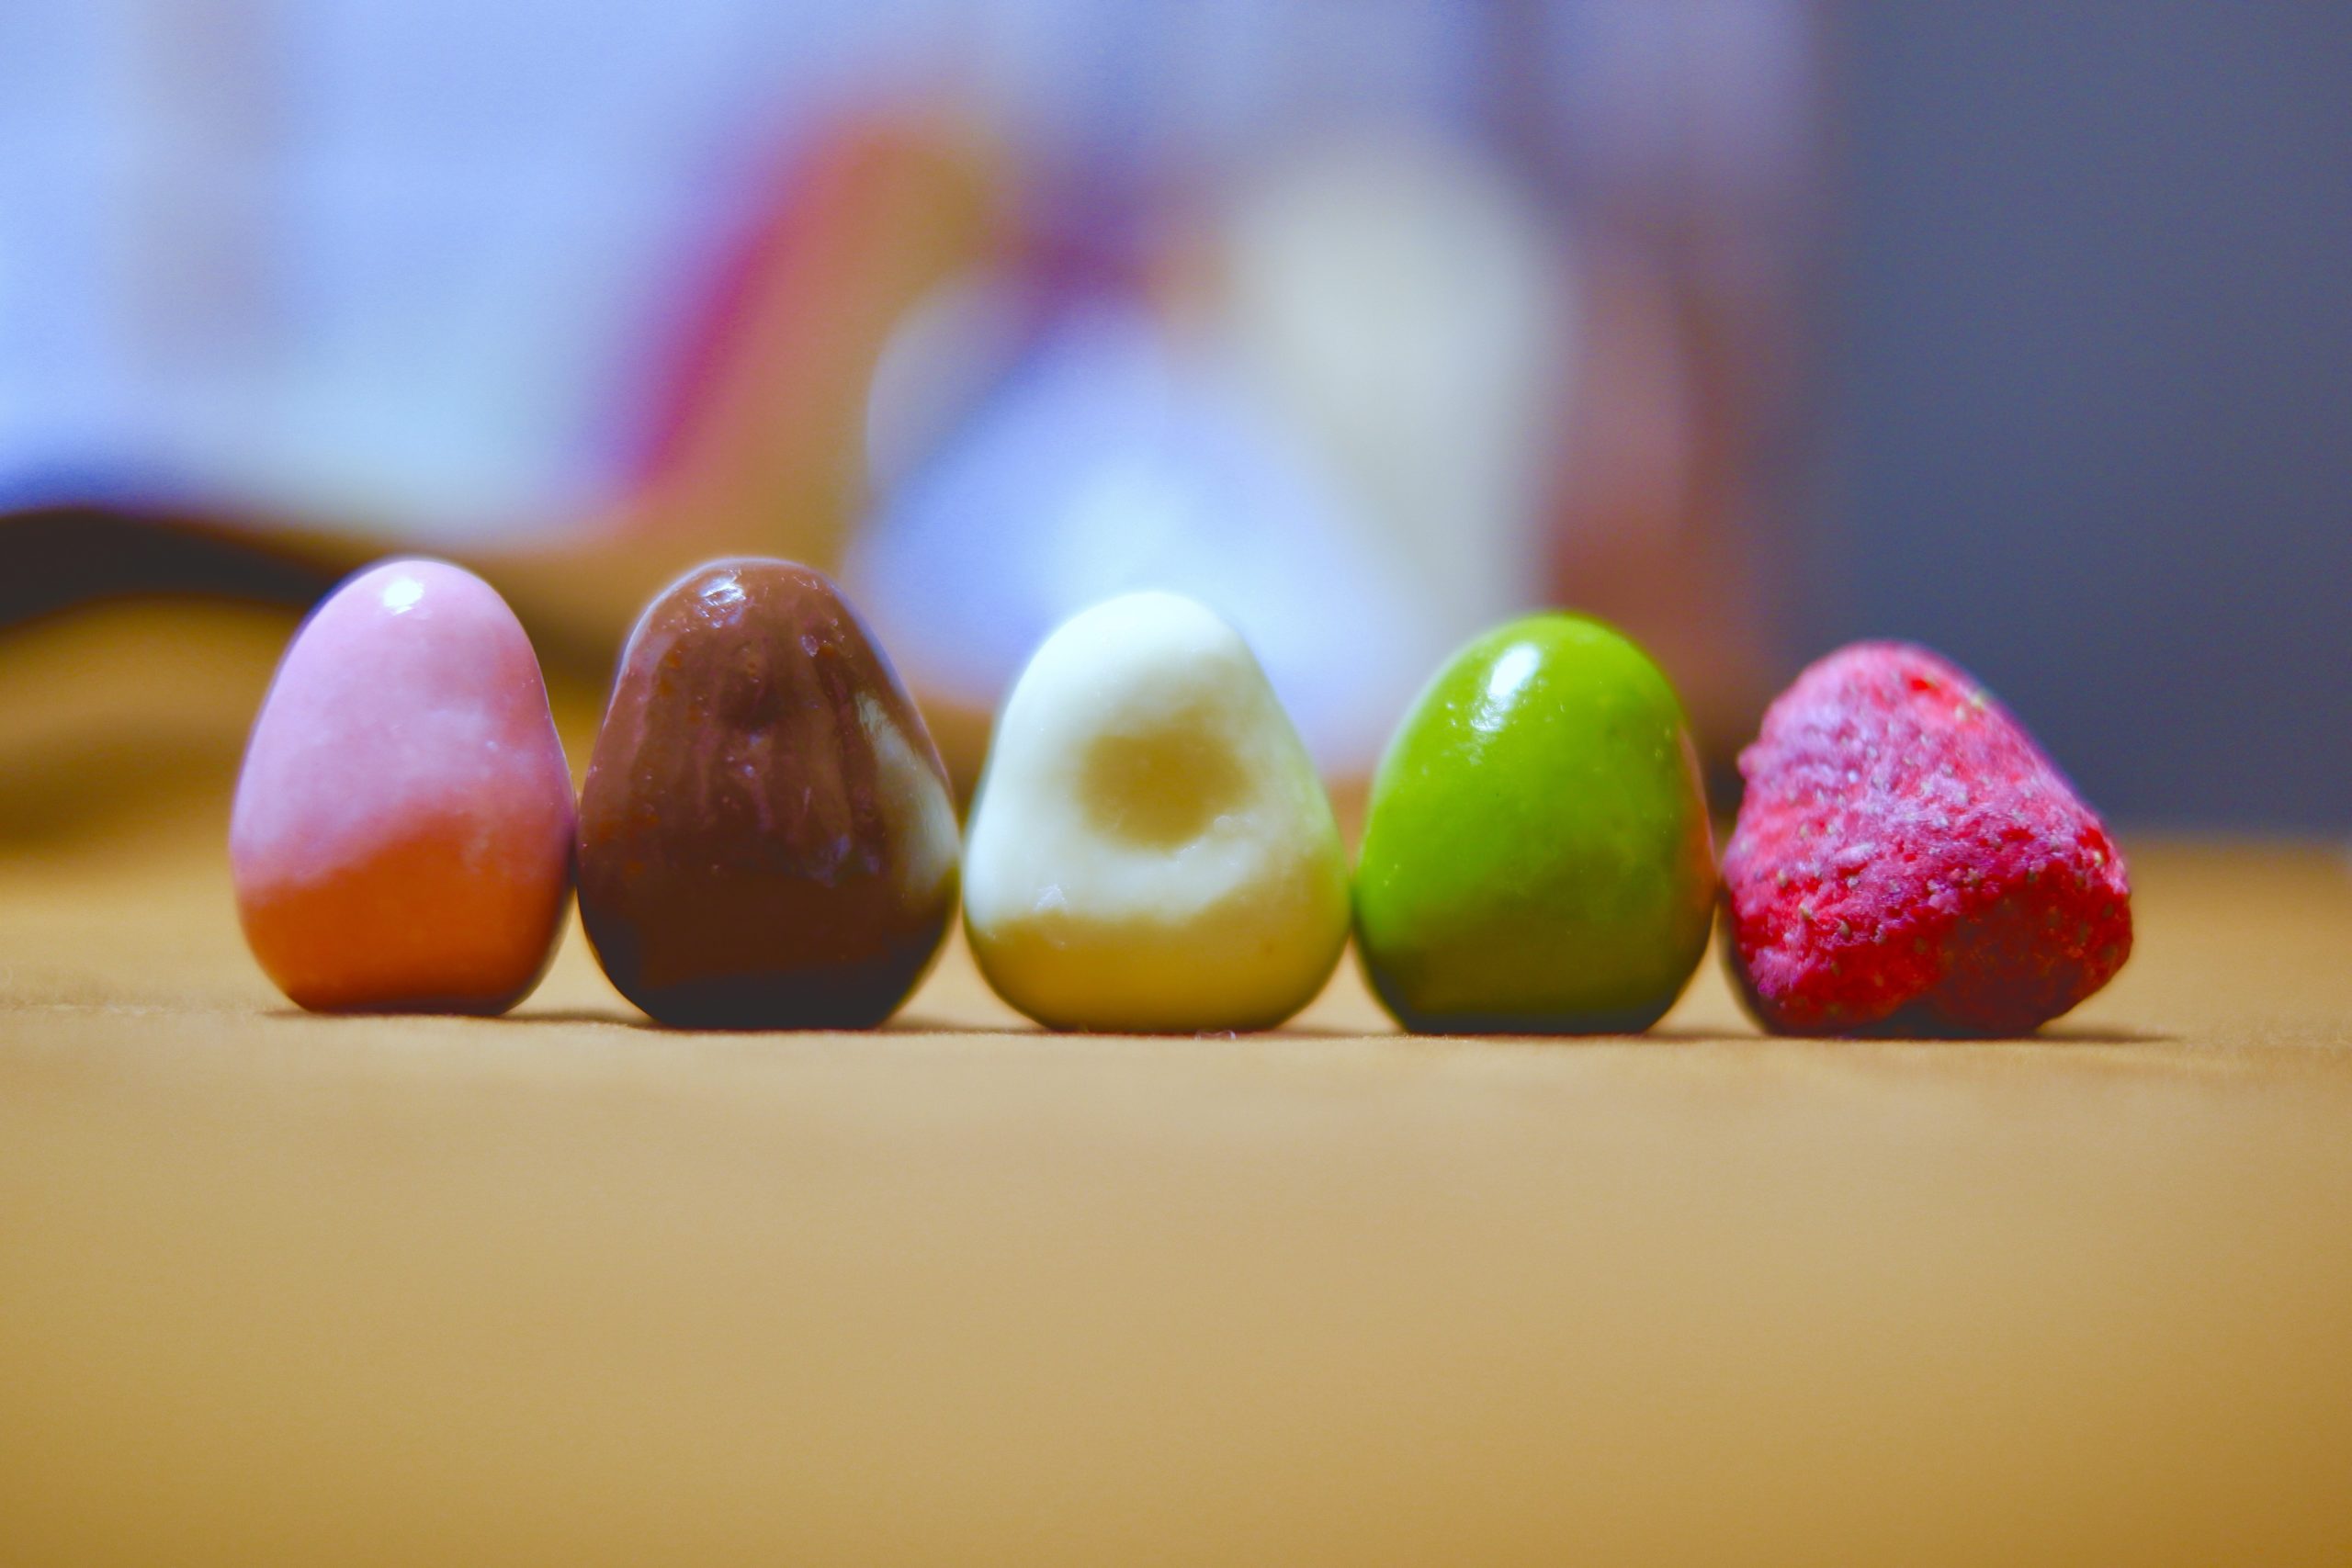 無印良品の チョコがけいちご 5種類食べ比べてみた カズマノマ